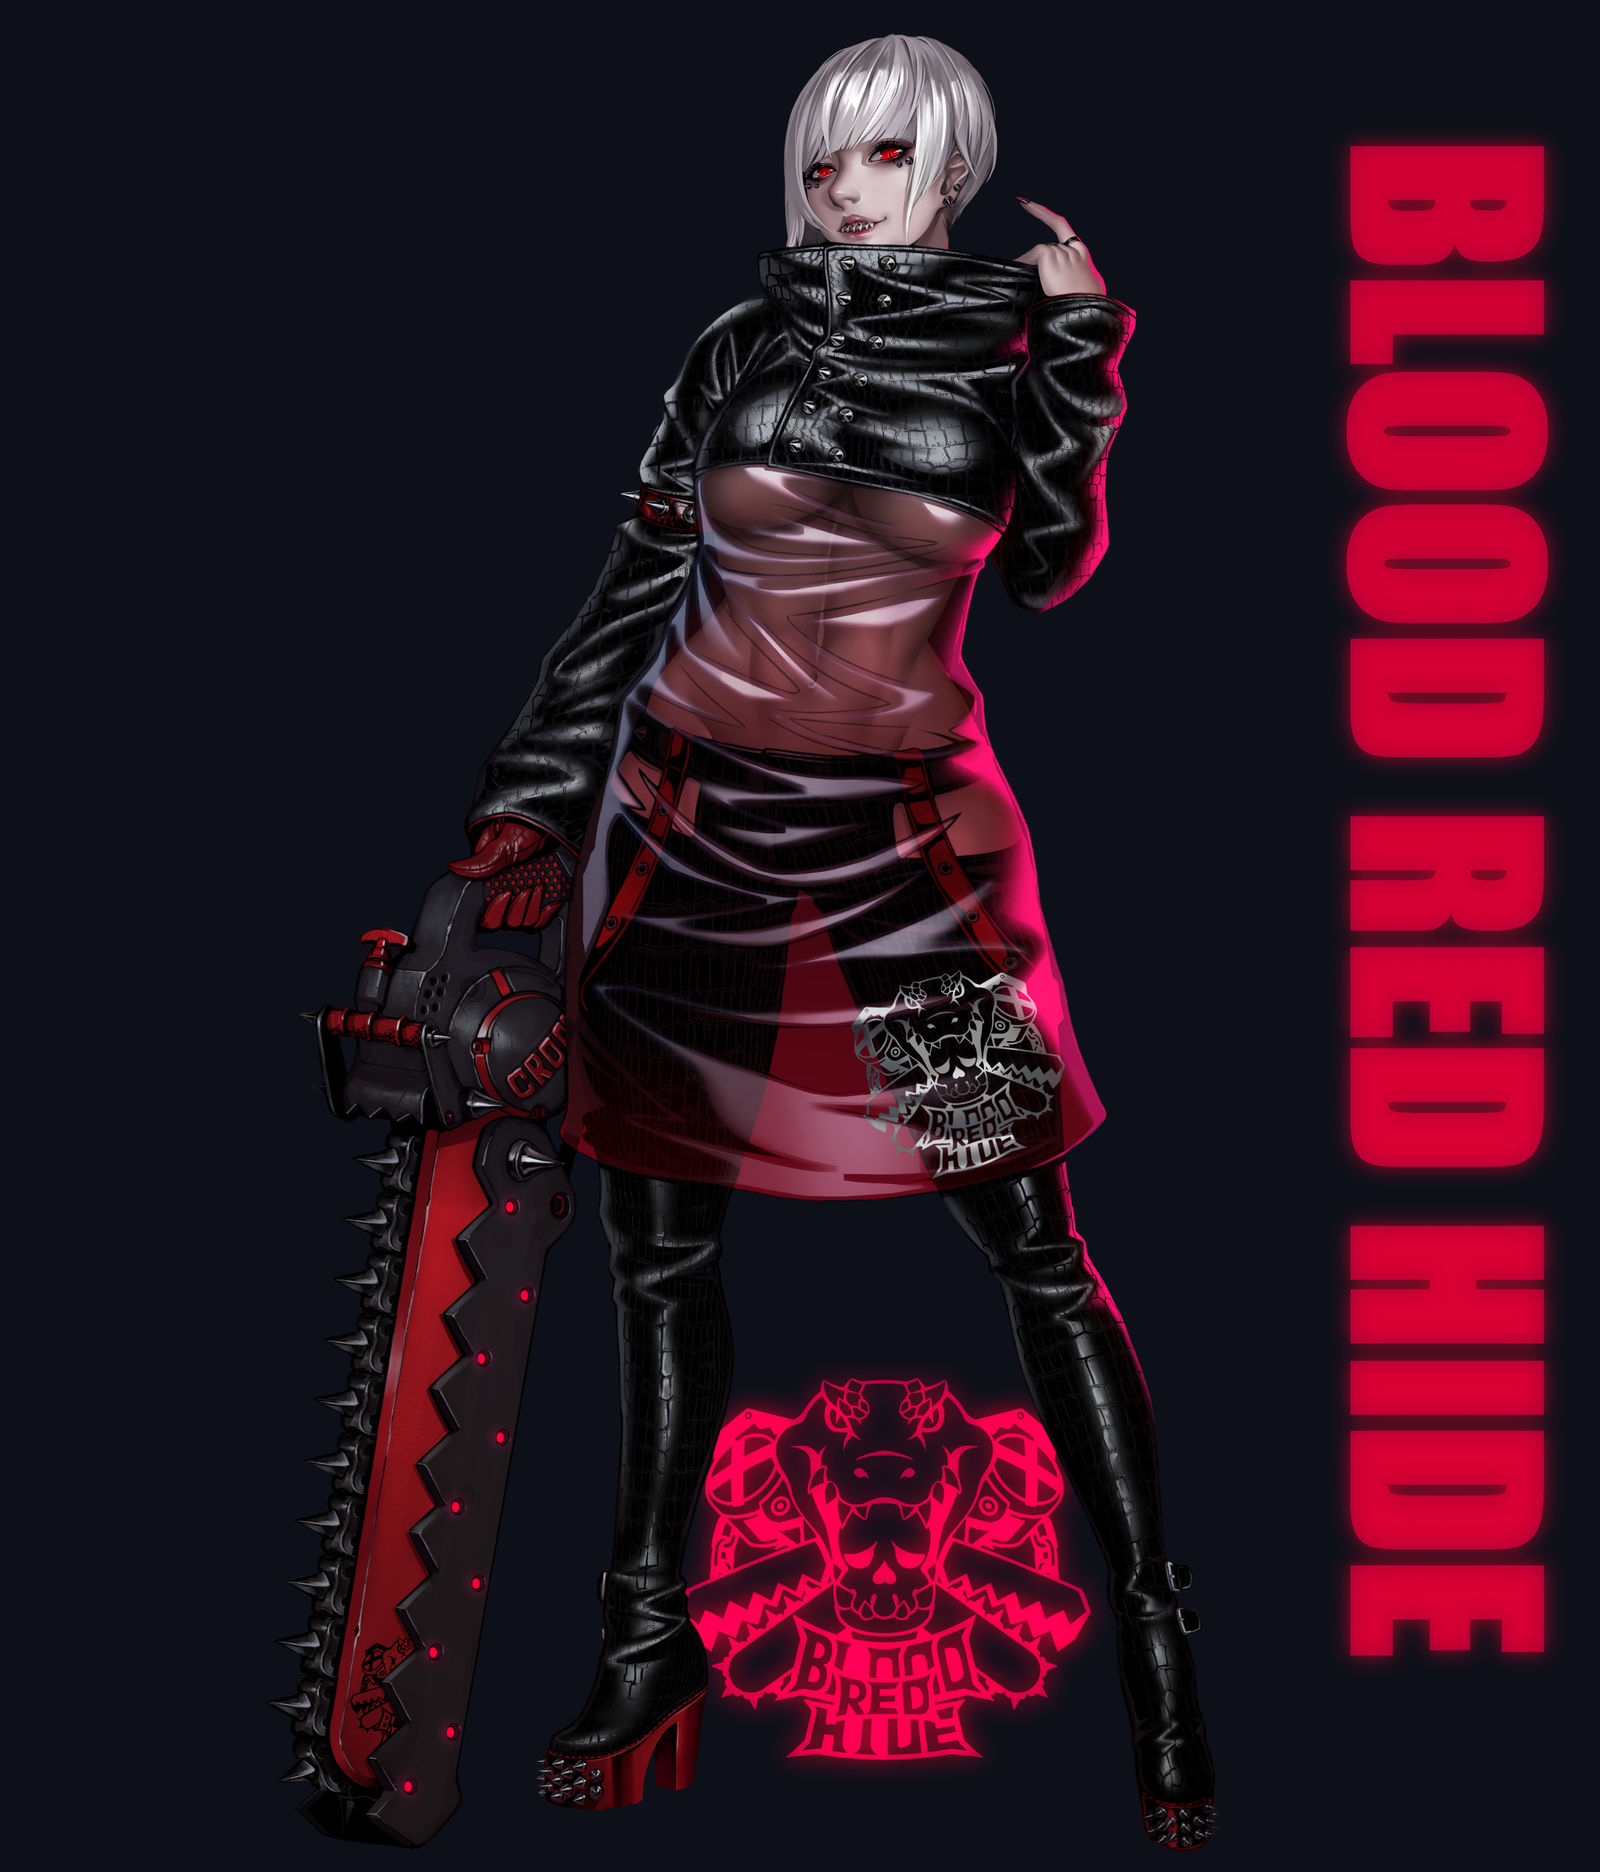 Blood red hide-胸部latex